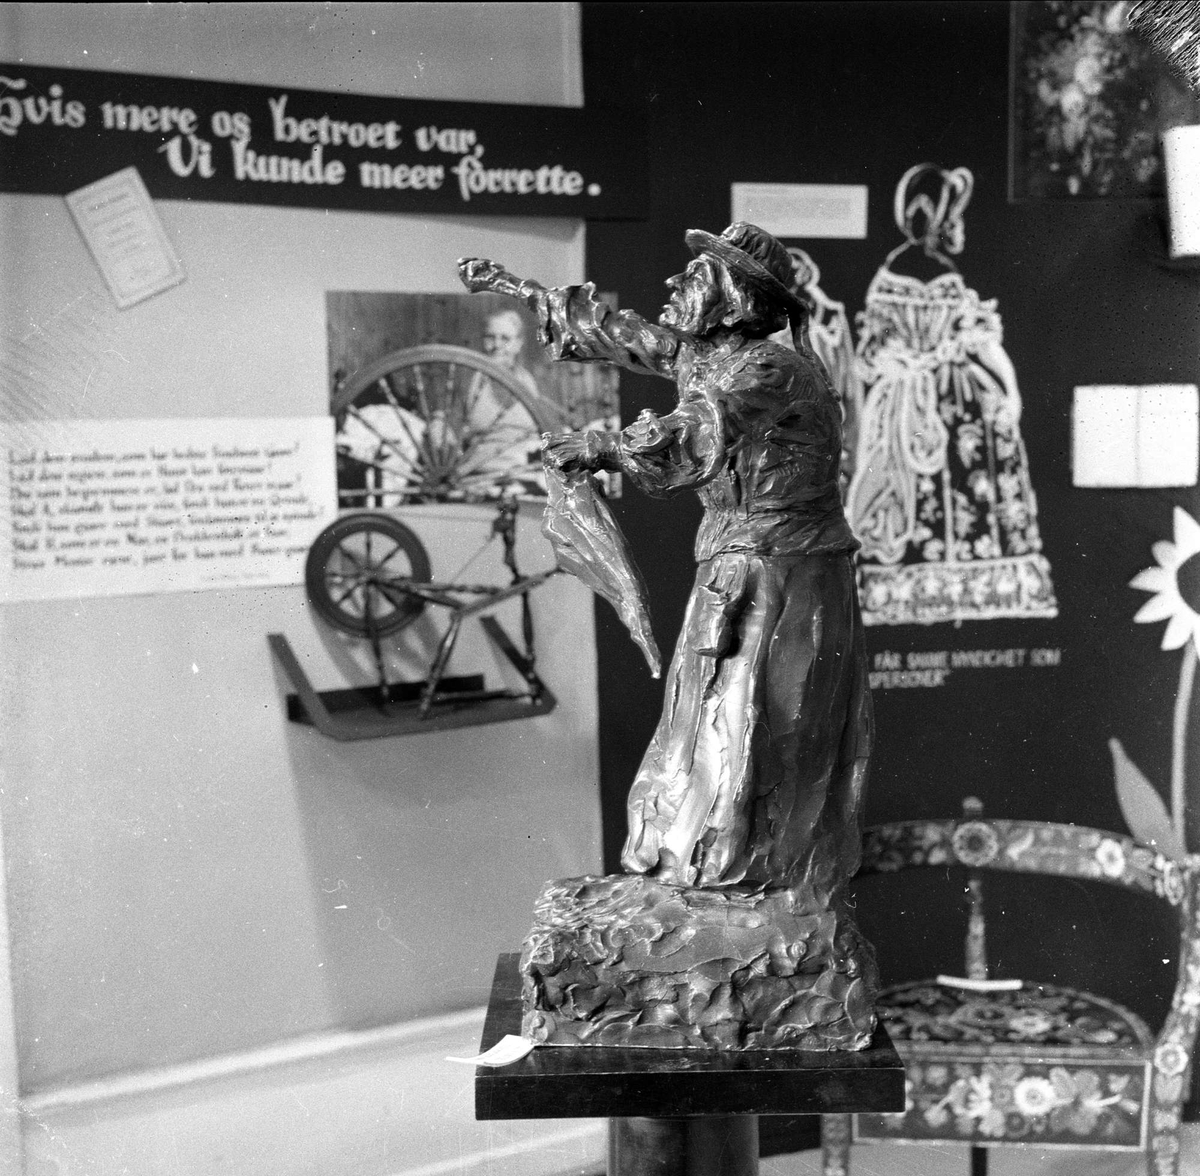 Kvinnesak-utstilling Frogner. Oslo mai 1959